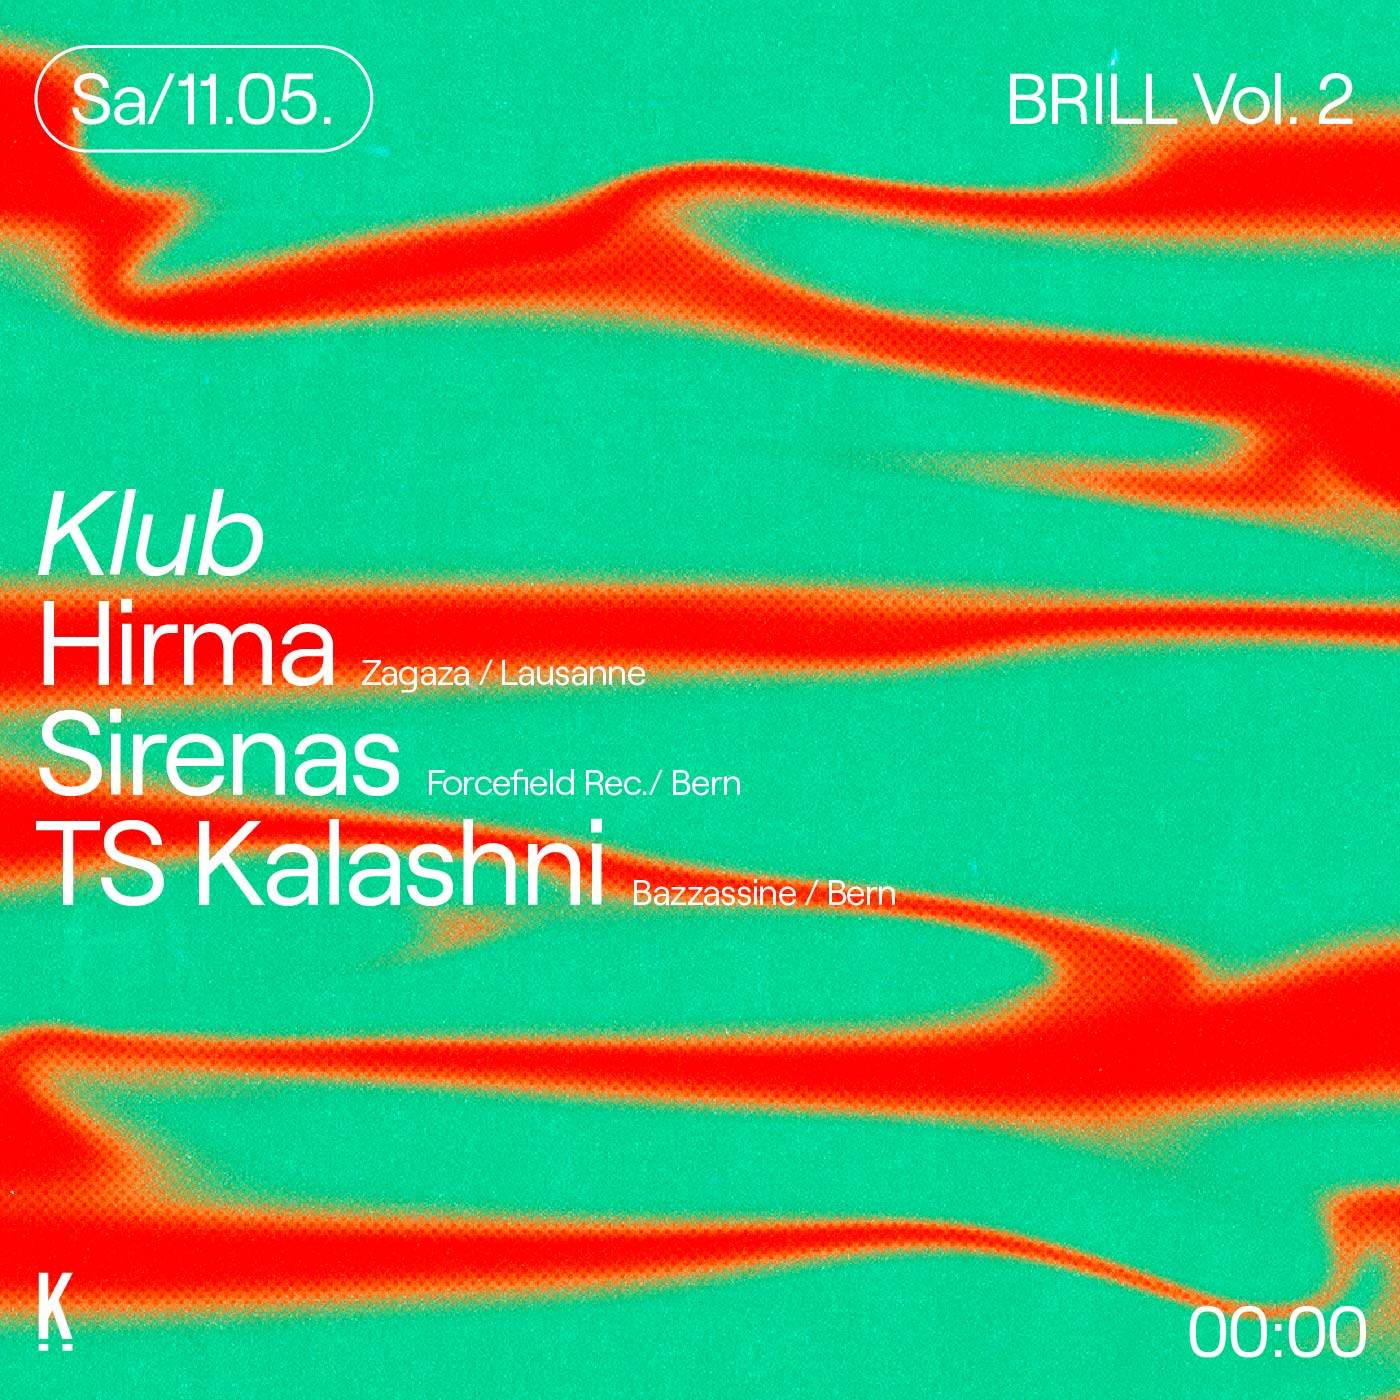 Brill Vol. 2 w. Hirma & TS Kala$hni - Página frontal